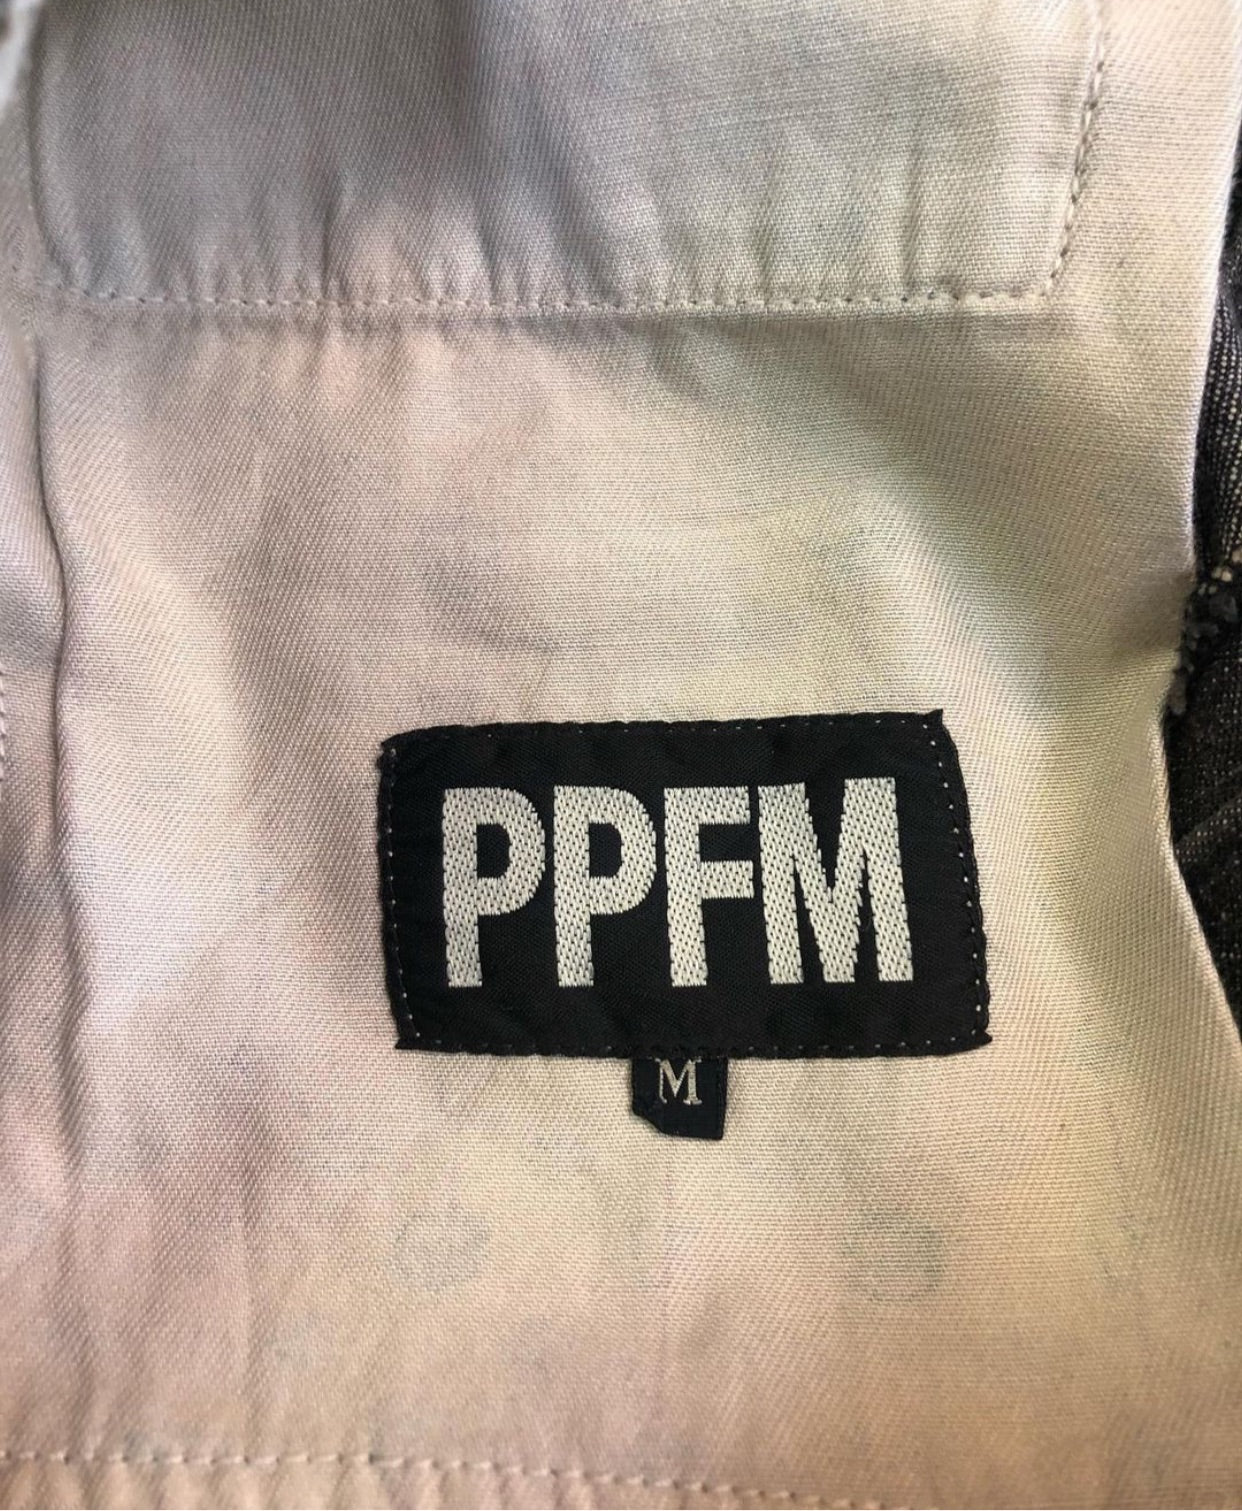 PPFM 20th Anniversary Prisoner Denim